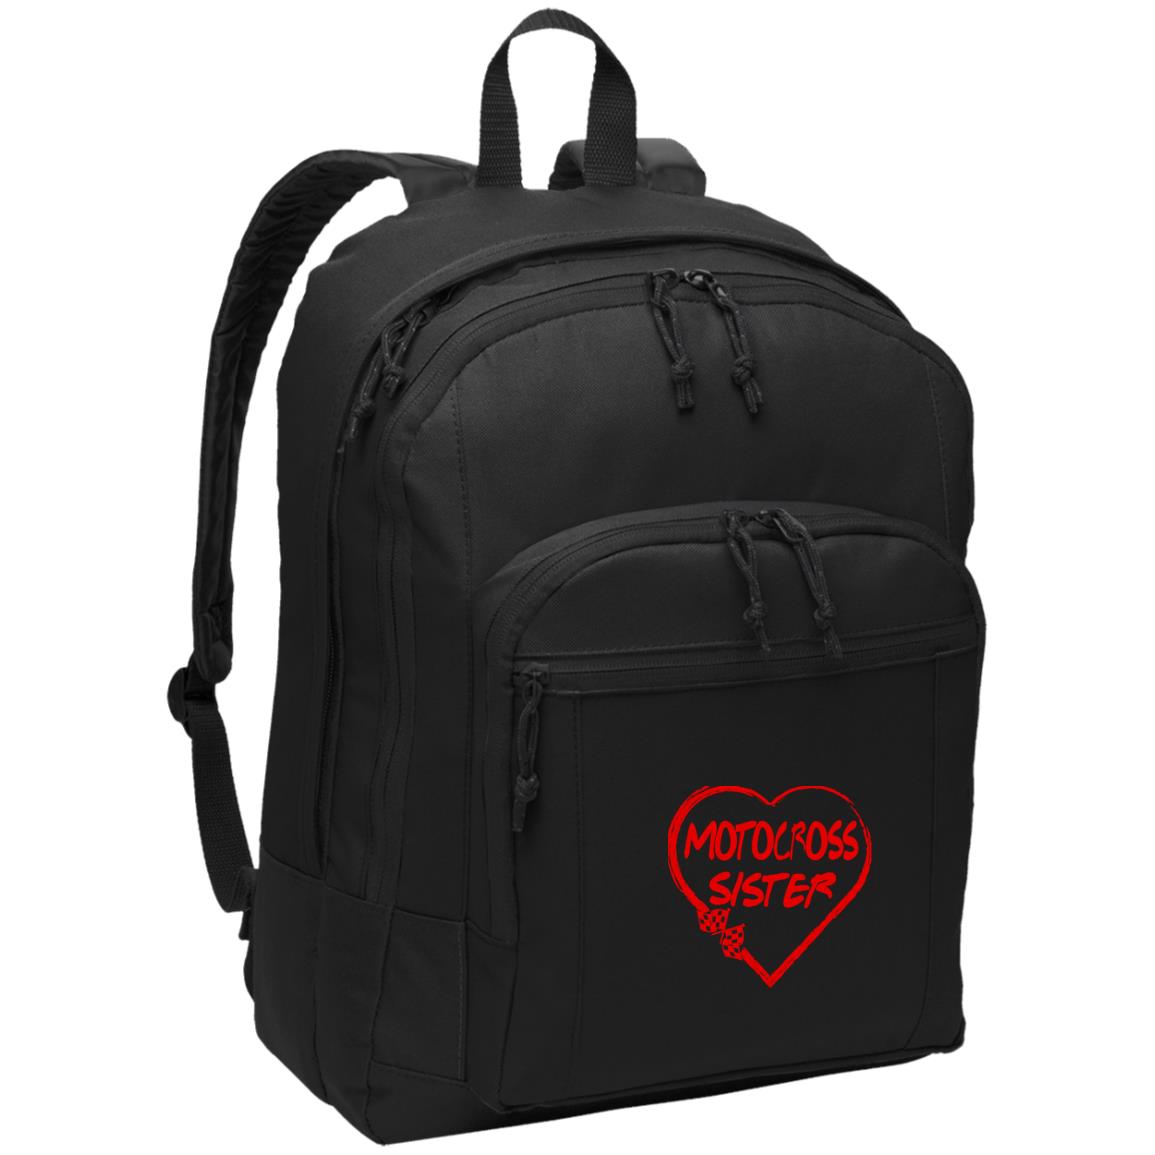 Motocross Sister Heart Basic Backpack